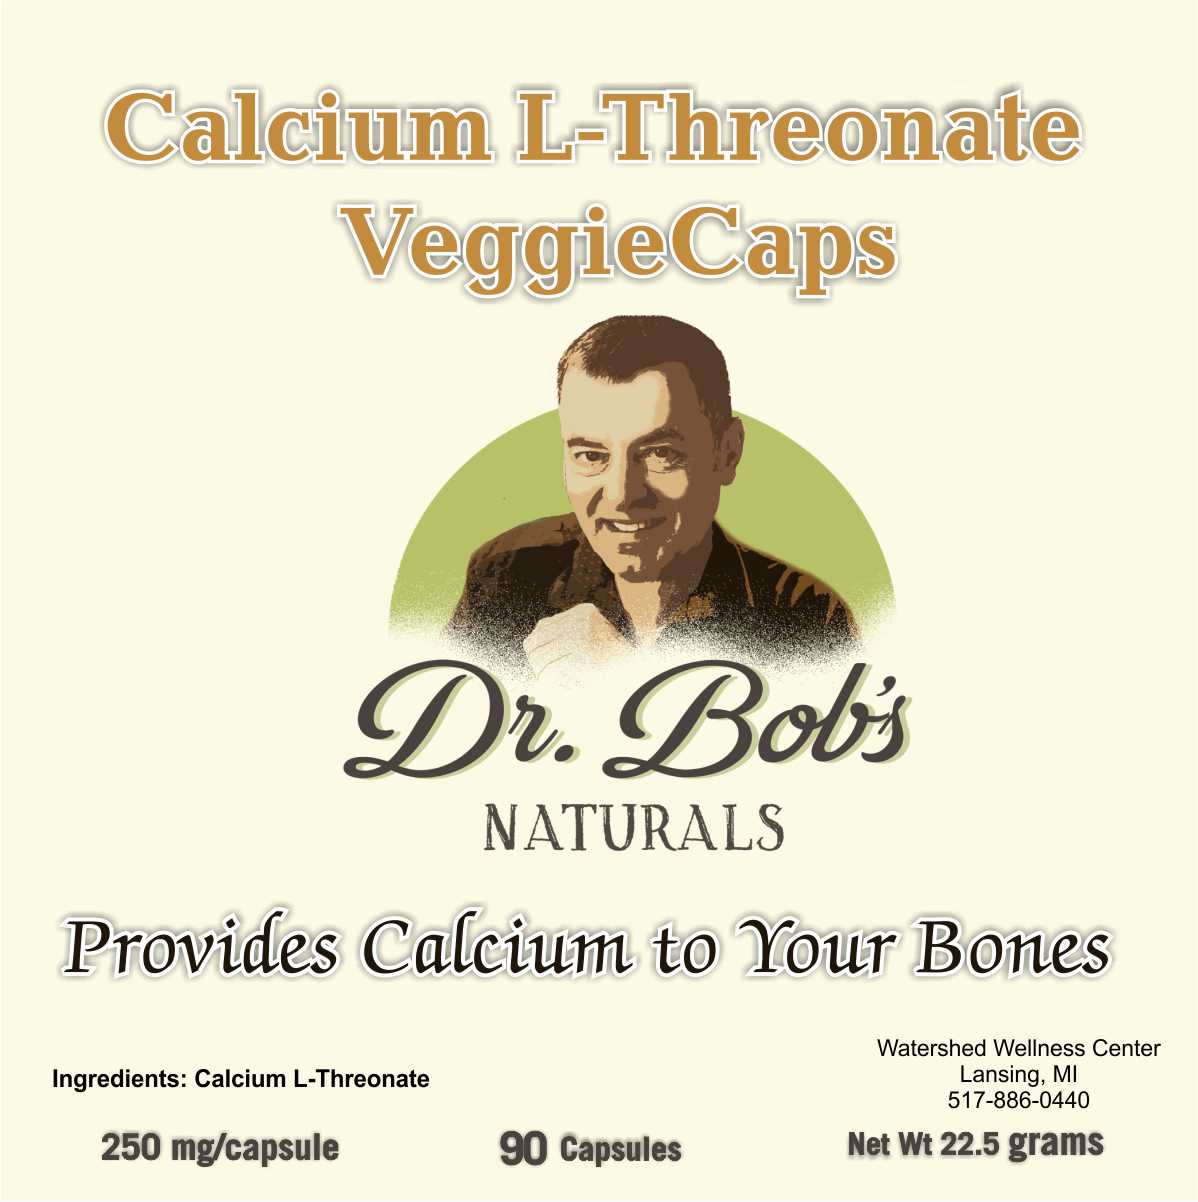 Calcium L-Threonate Capsules